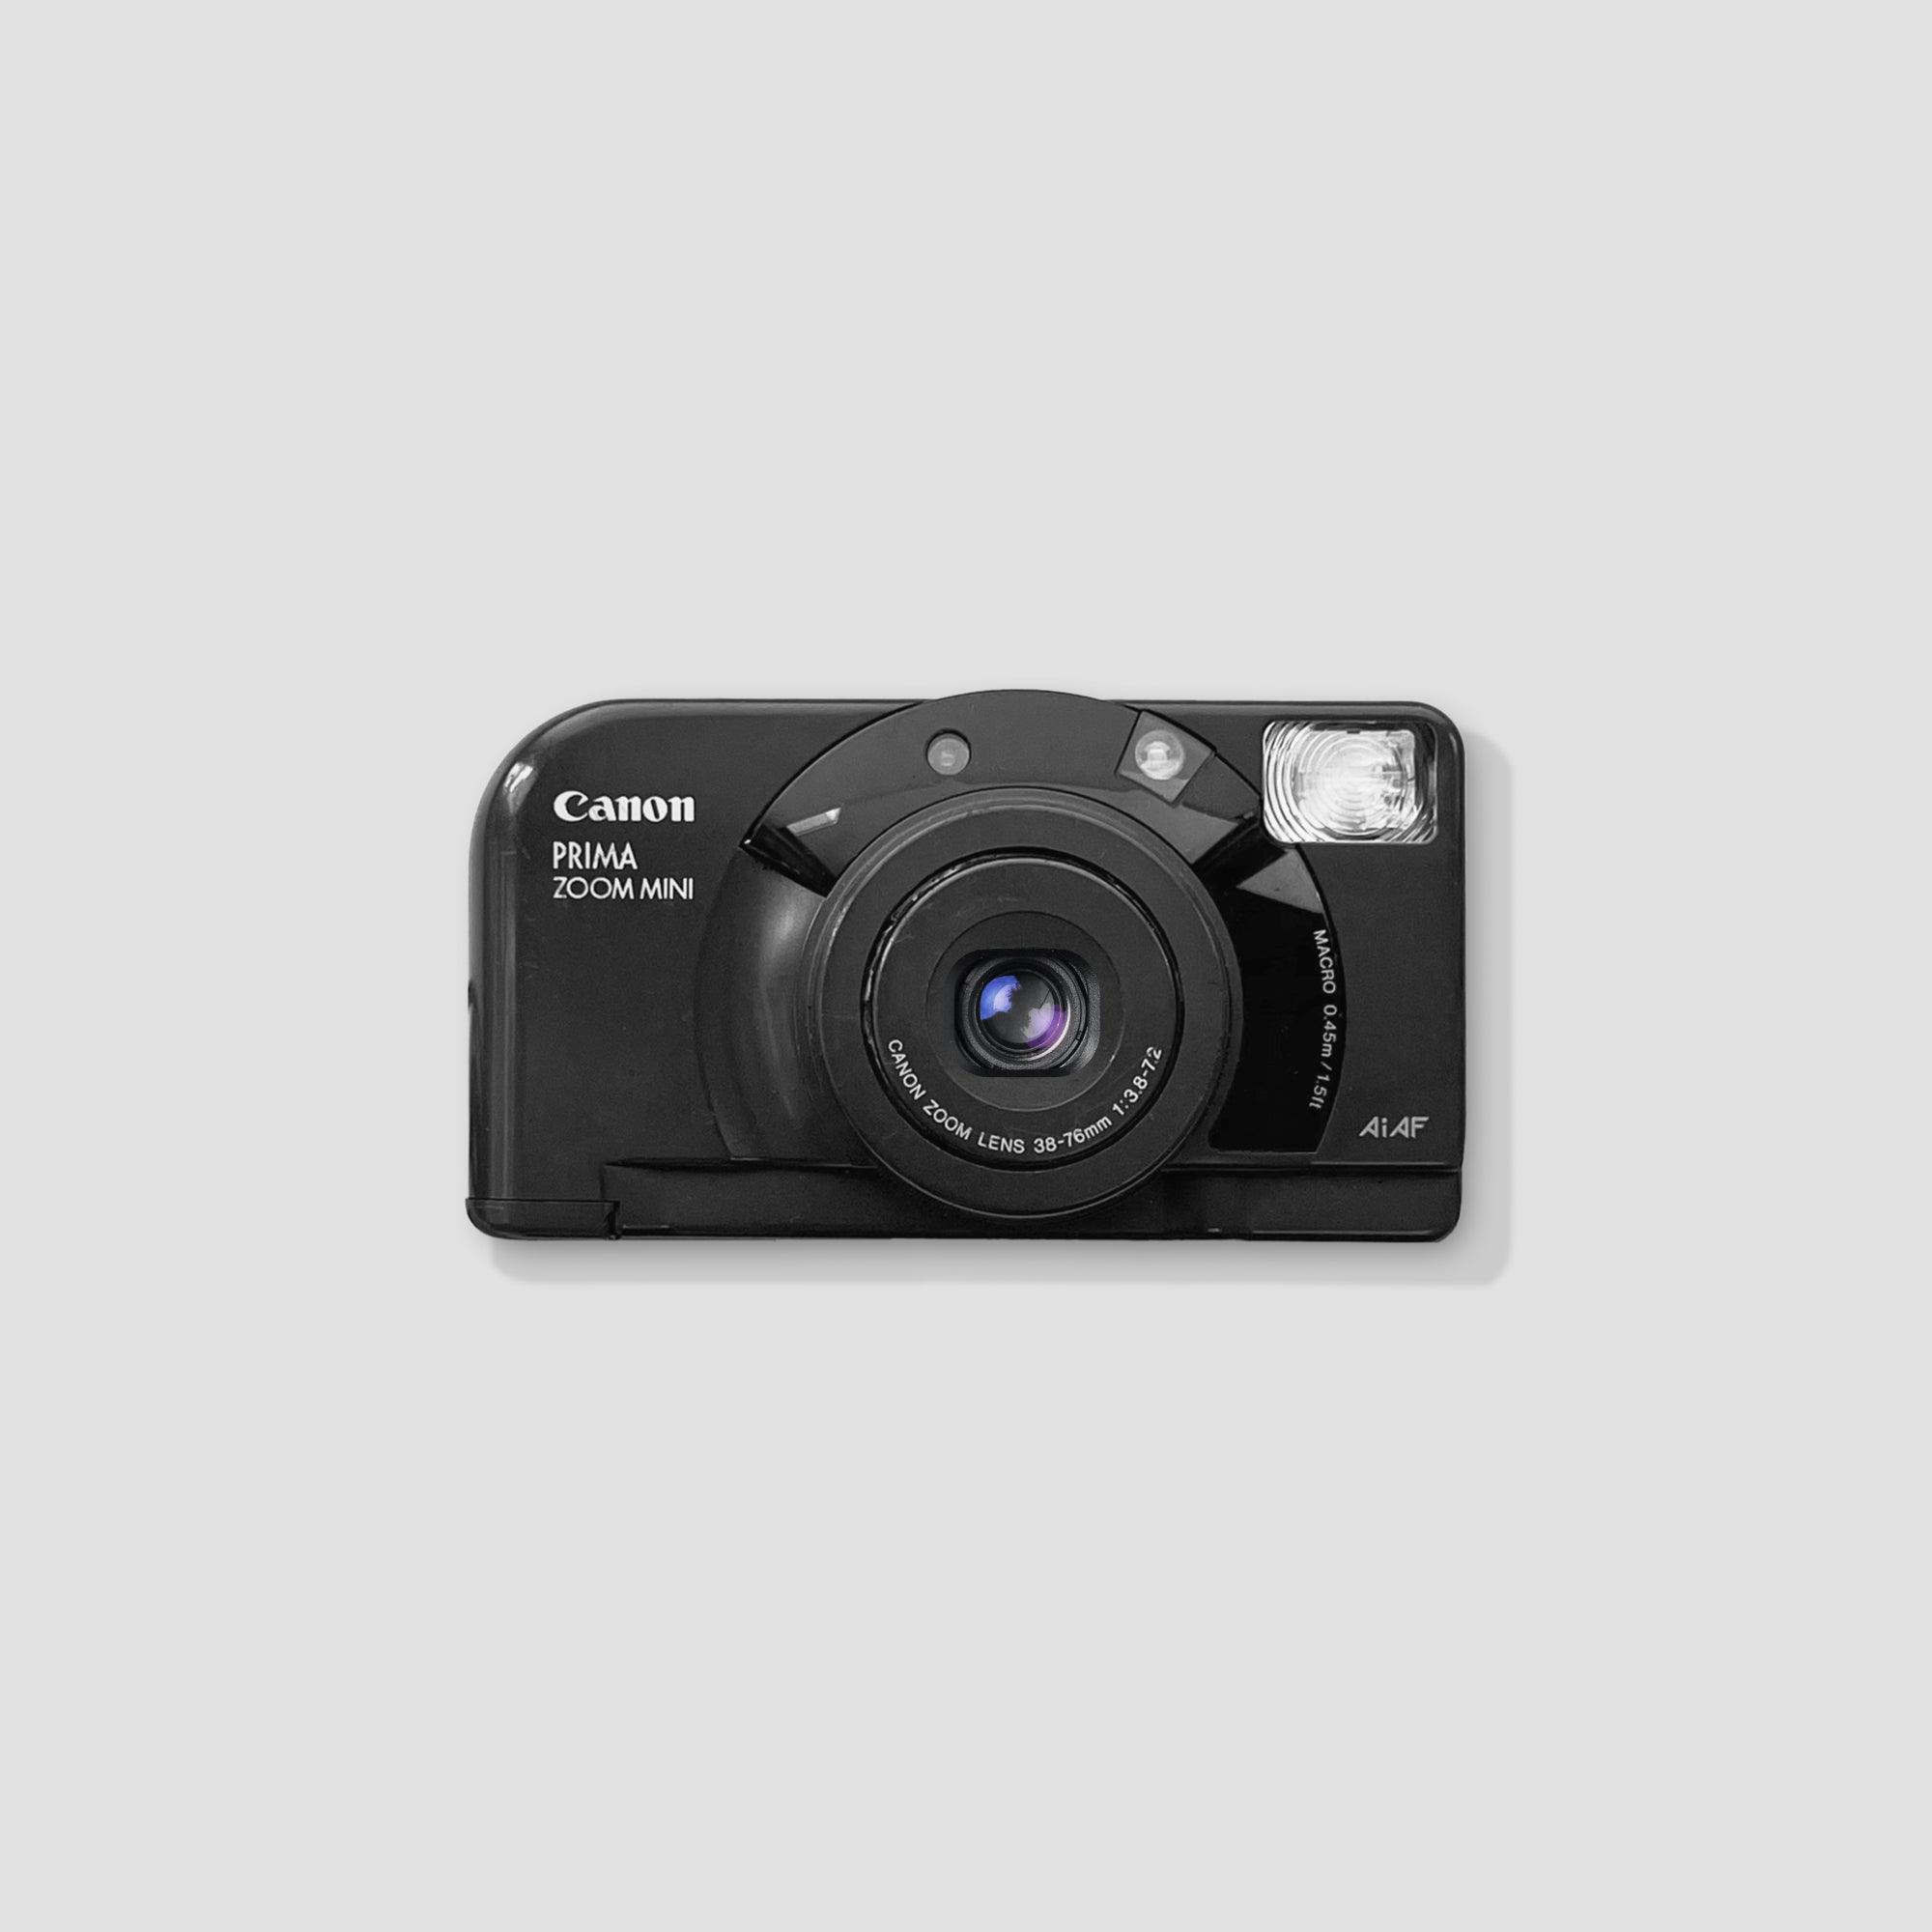 Canon Prima Zoom Mini